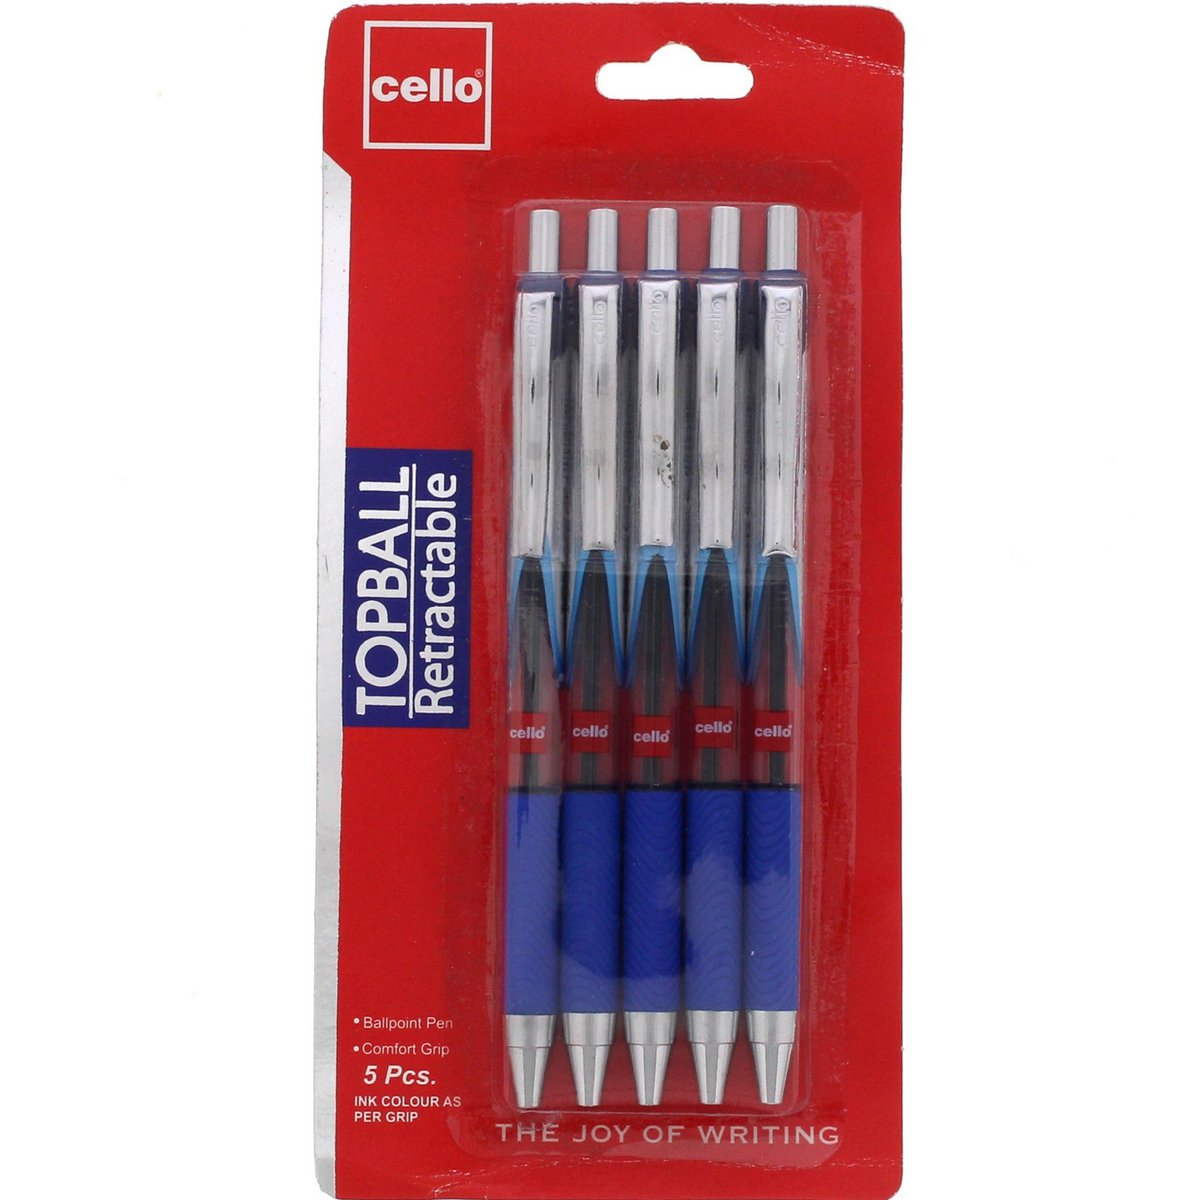 شيلو أقلام حبر جافة زرقاء ضاغطة 5 حبات